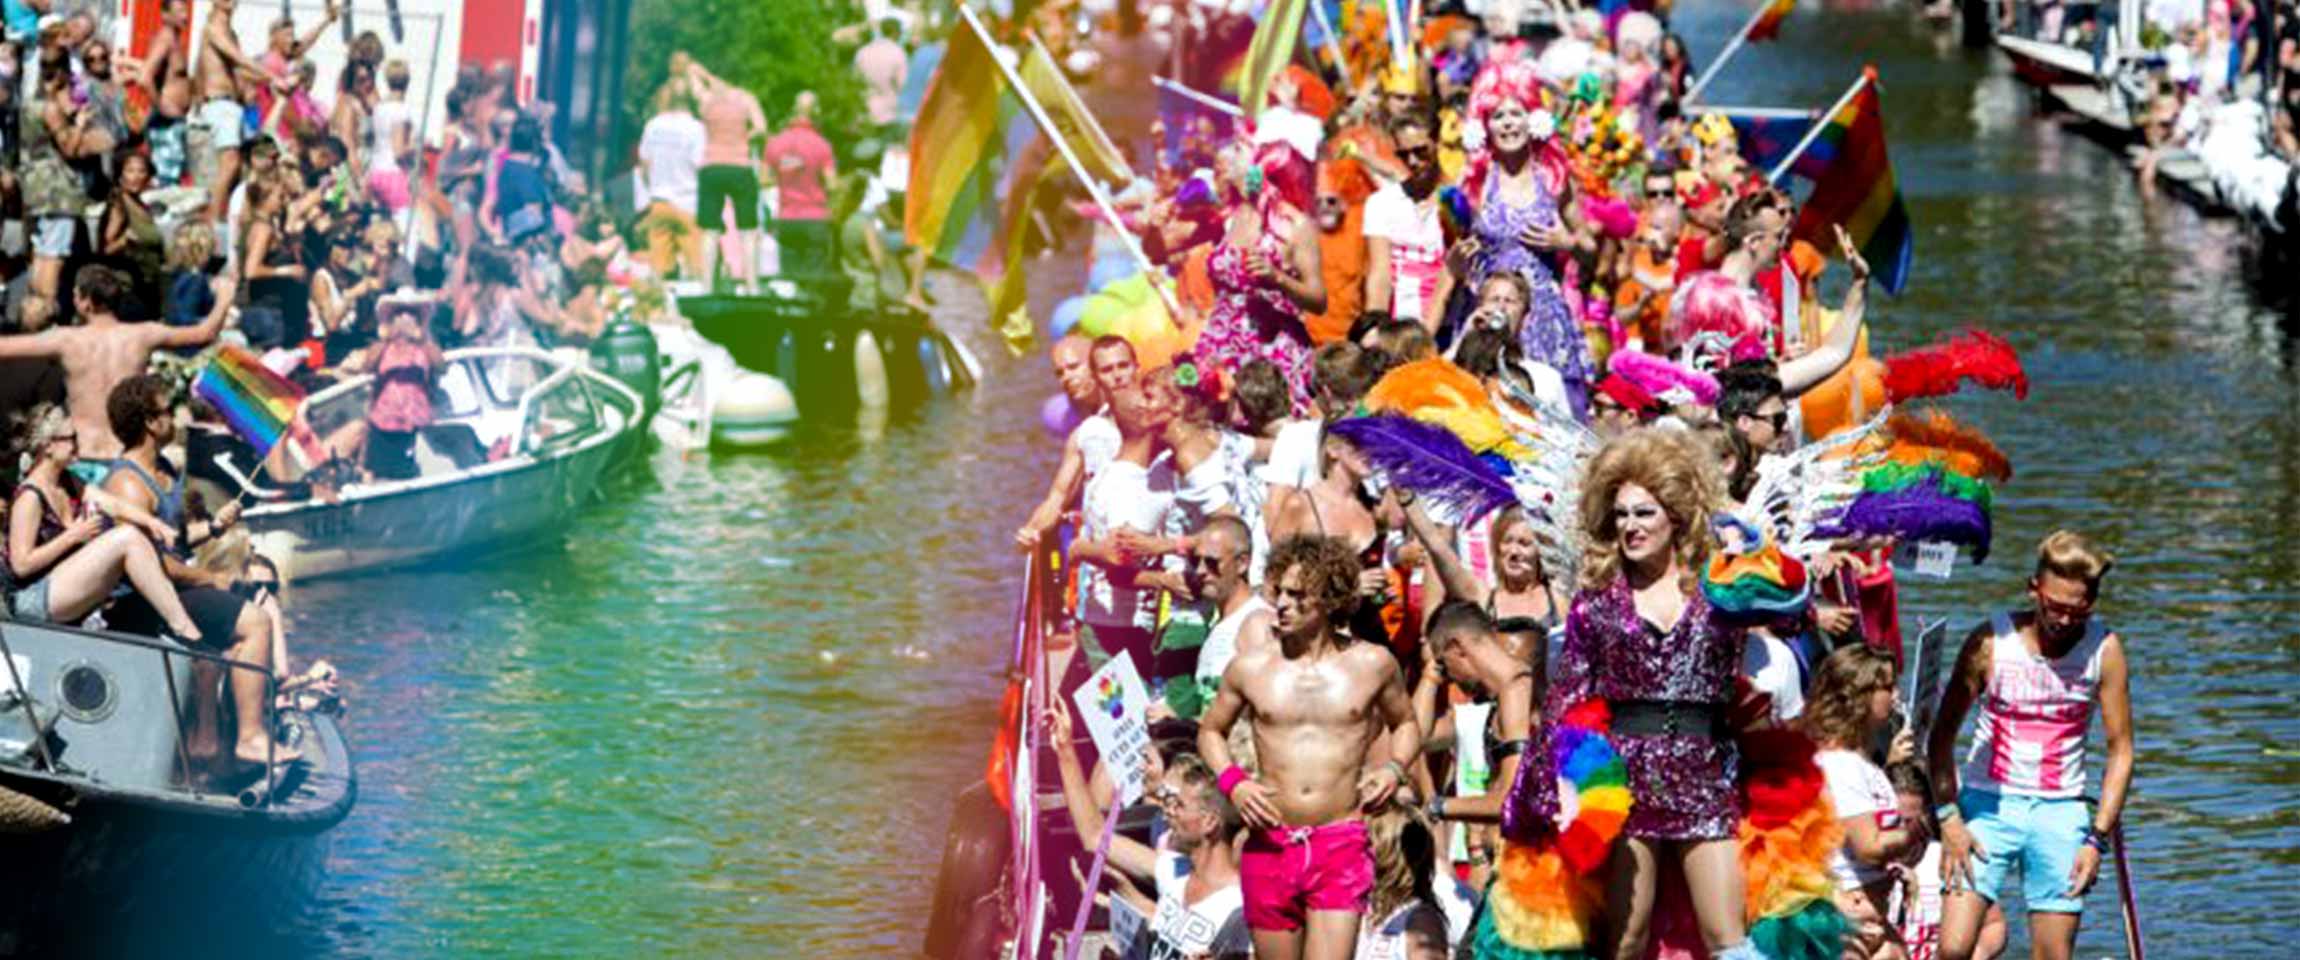 Amsterdam Canal Pride 2017 Romeo